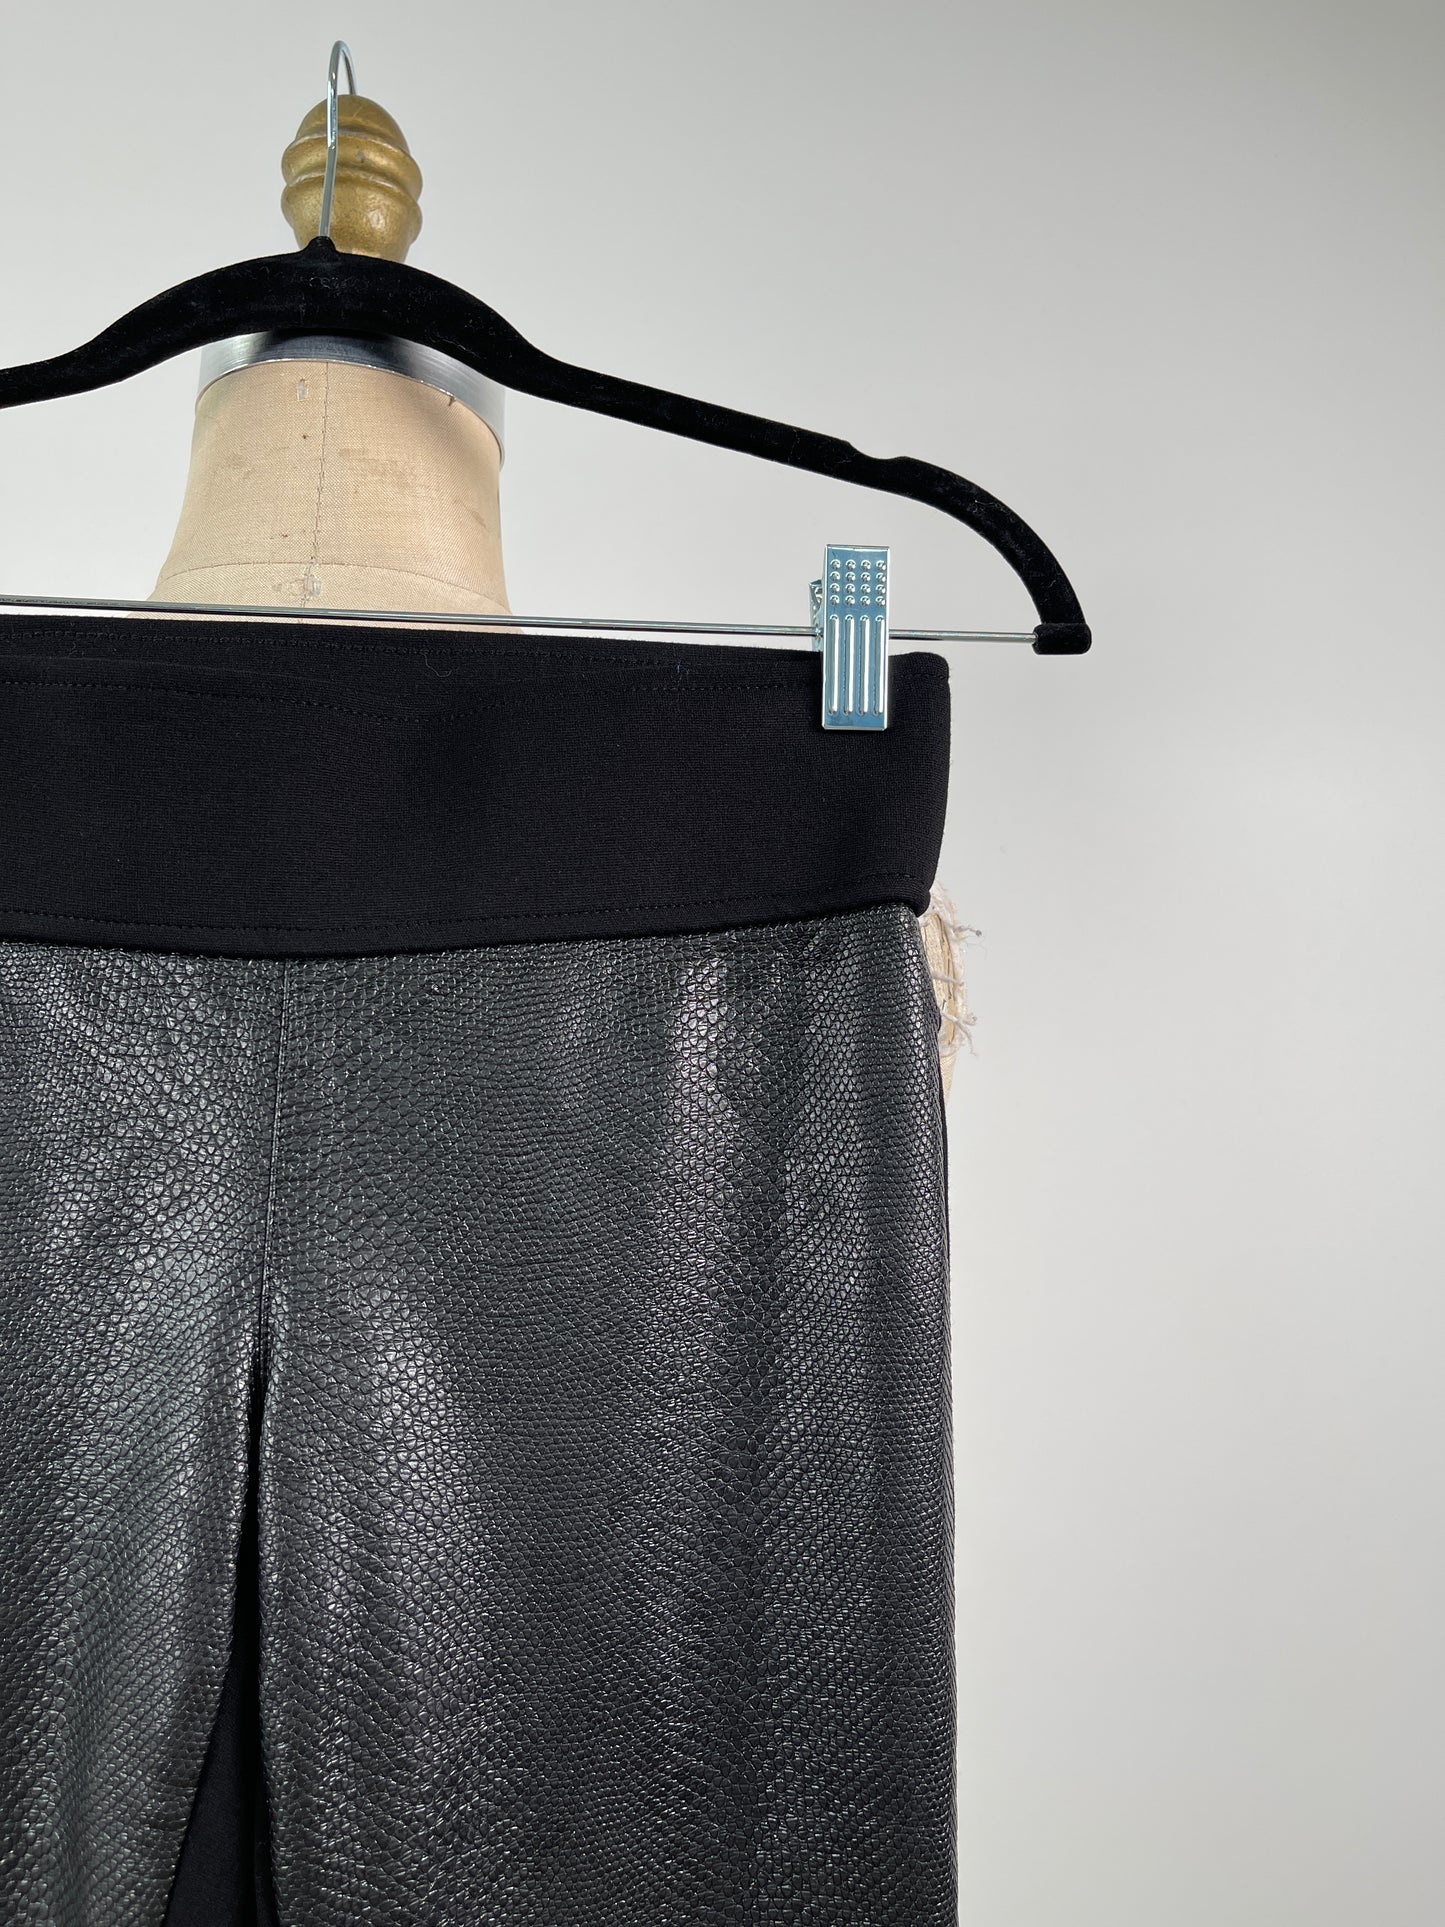 Pantalon legging bi-matières noir effet croco (XXS)